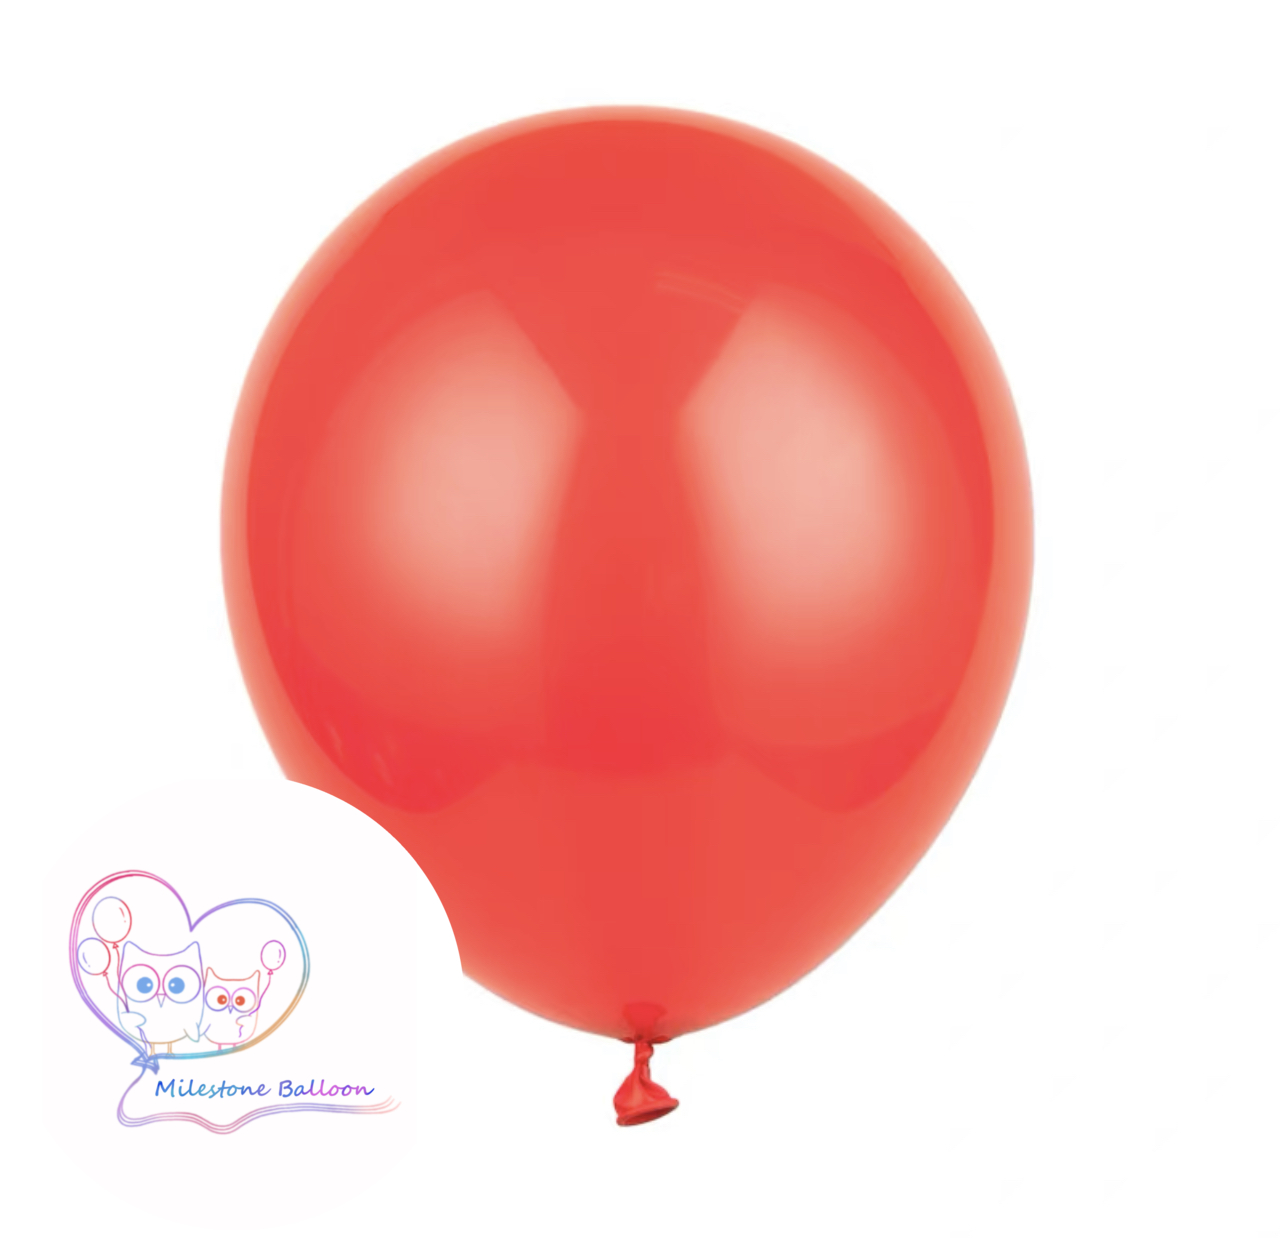 5吋氣球 (紅色) (1pc) 5LB1